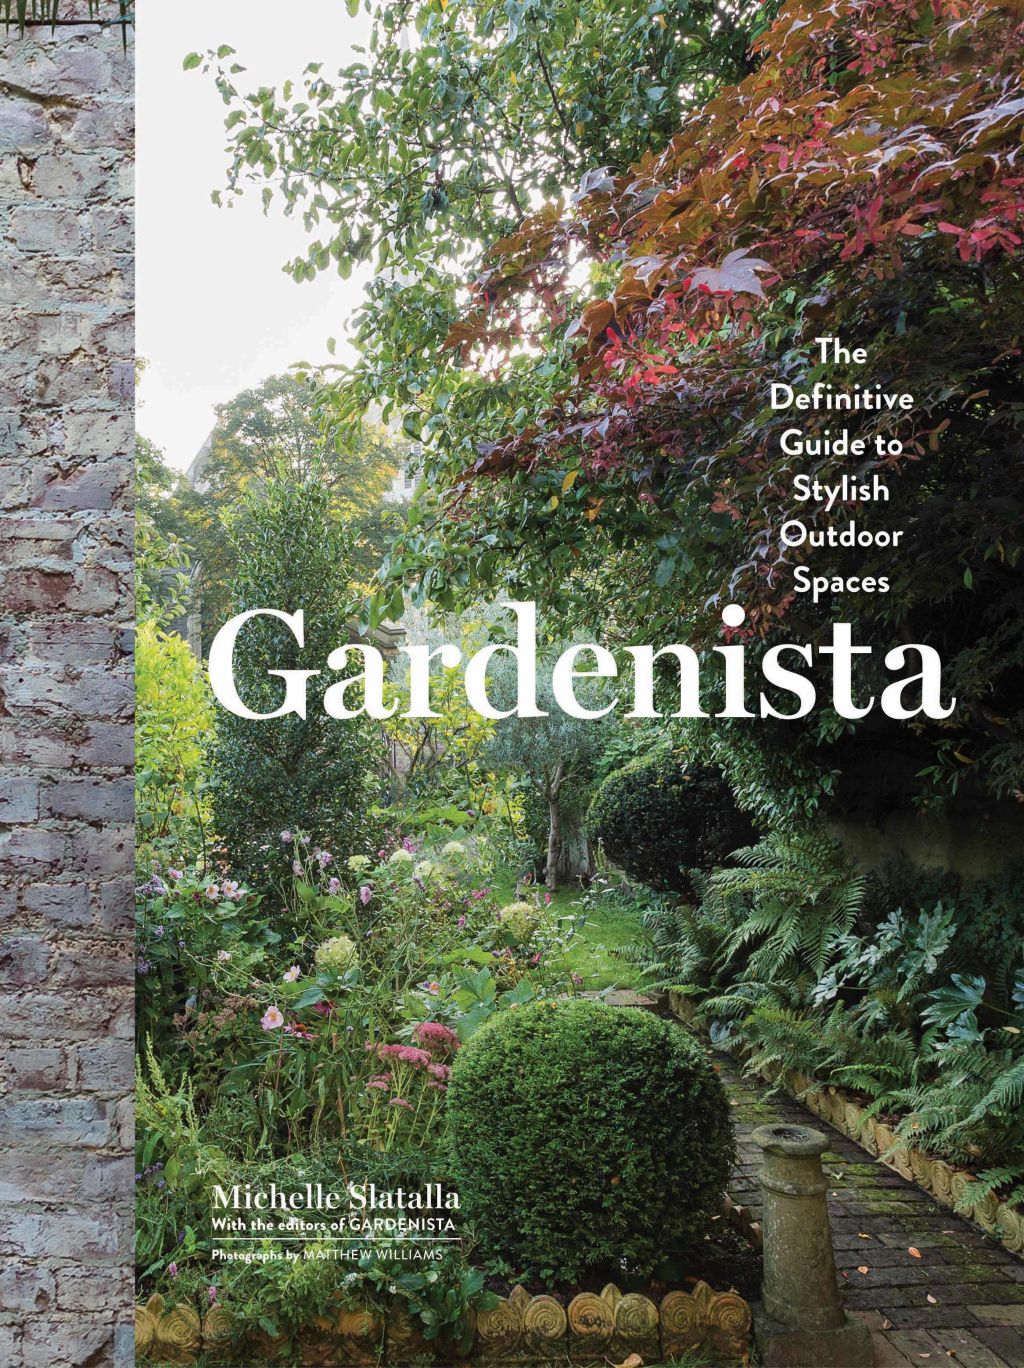 Gardenista by Michelle Slatalla. Photo: Hardie Grant.